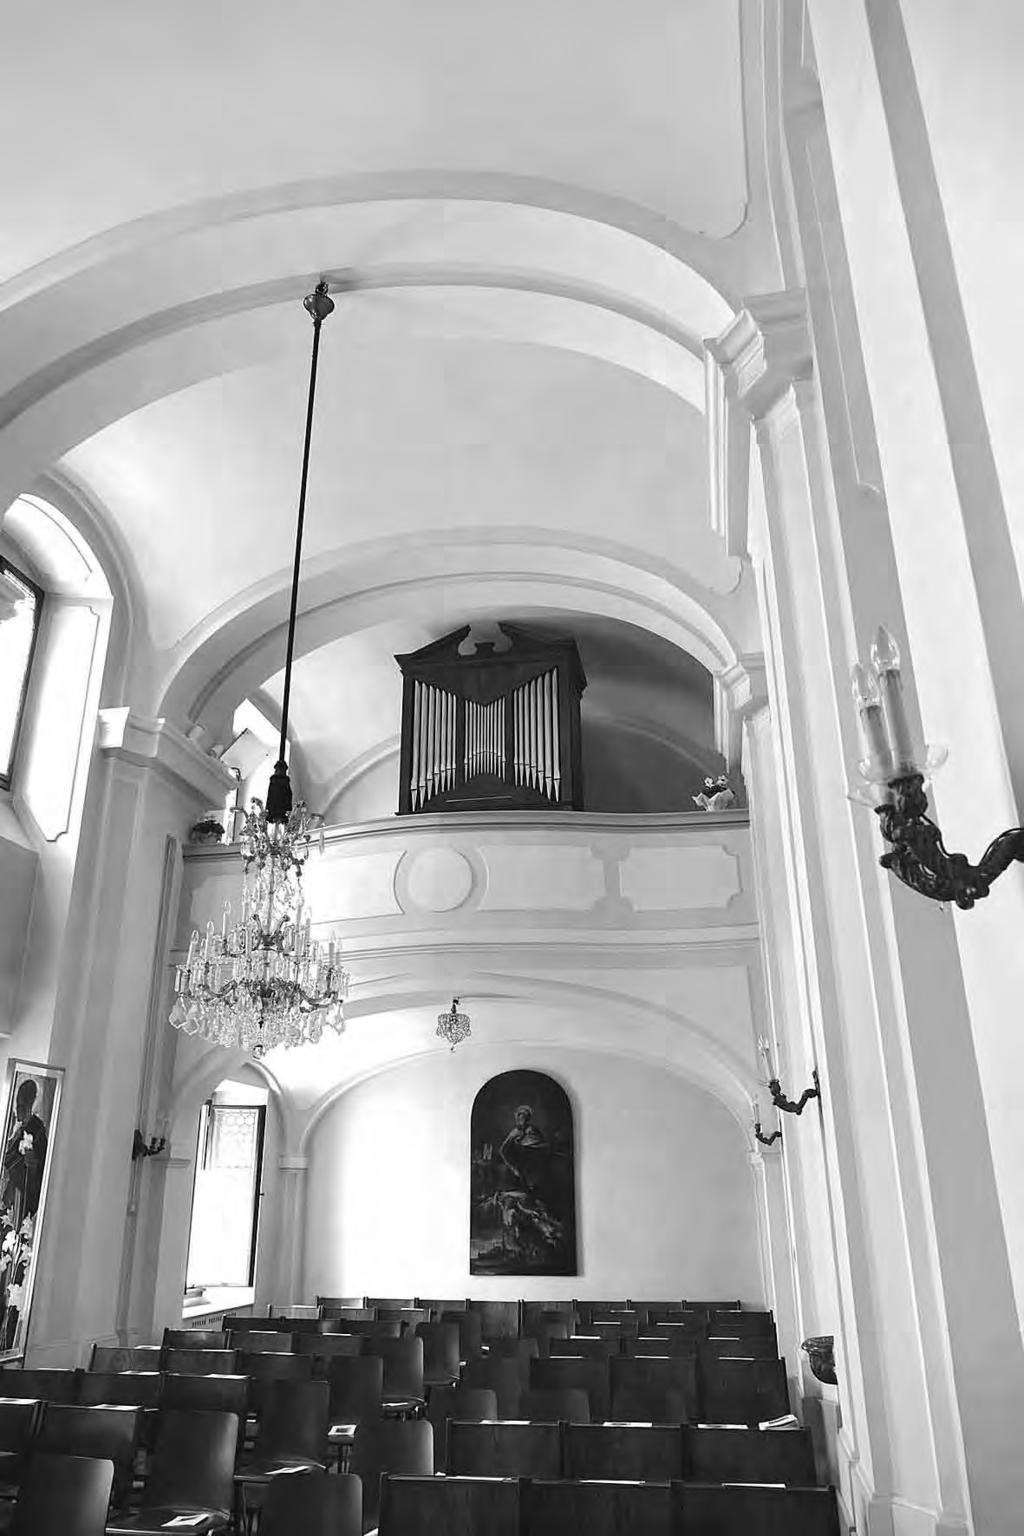 Gottfried ALLMER Neue Orgeln in Wien Wien I, Curhauskapelle Das Curhaus am Wiener Stephansplatz besitzt eine kleine barocke Hauskapelle, auf deren Empore 1981 durch den Klagenfurter Orgelbauer Rudolf